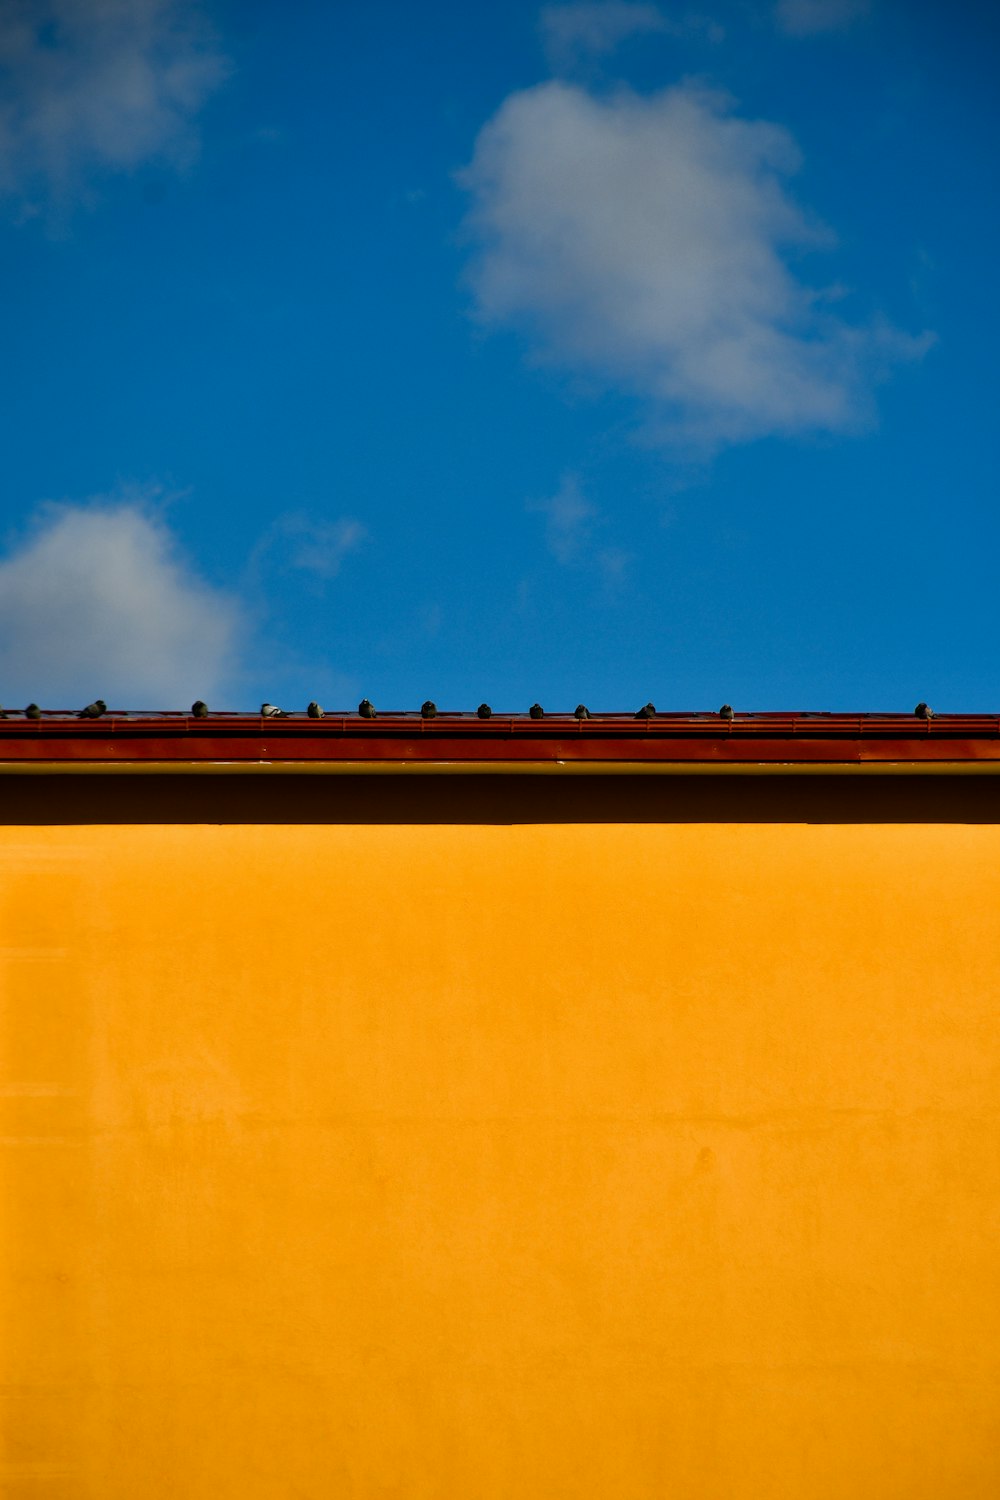 Edificio de hormigón marrón bajo el cielo azul